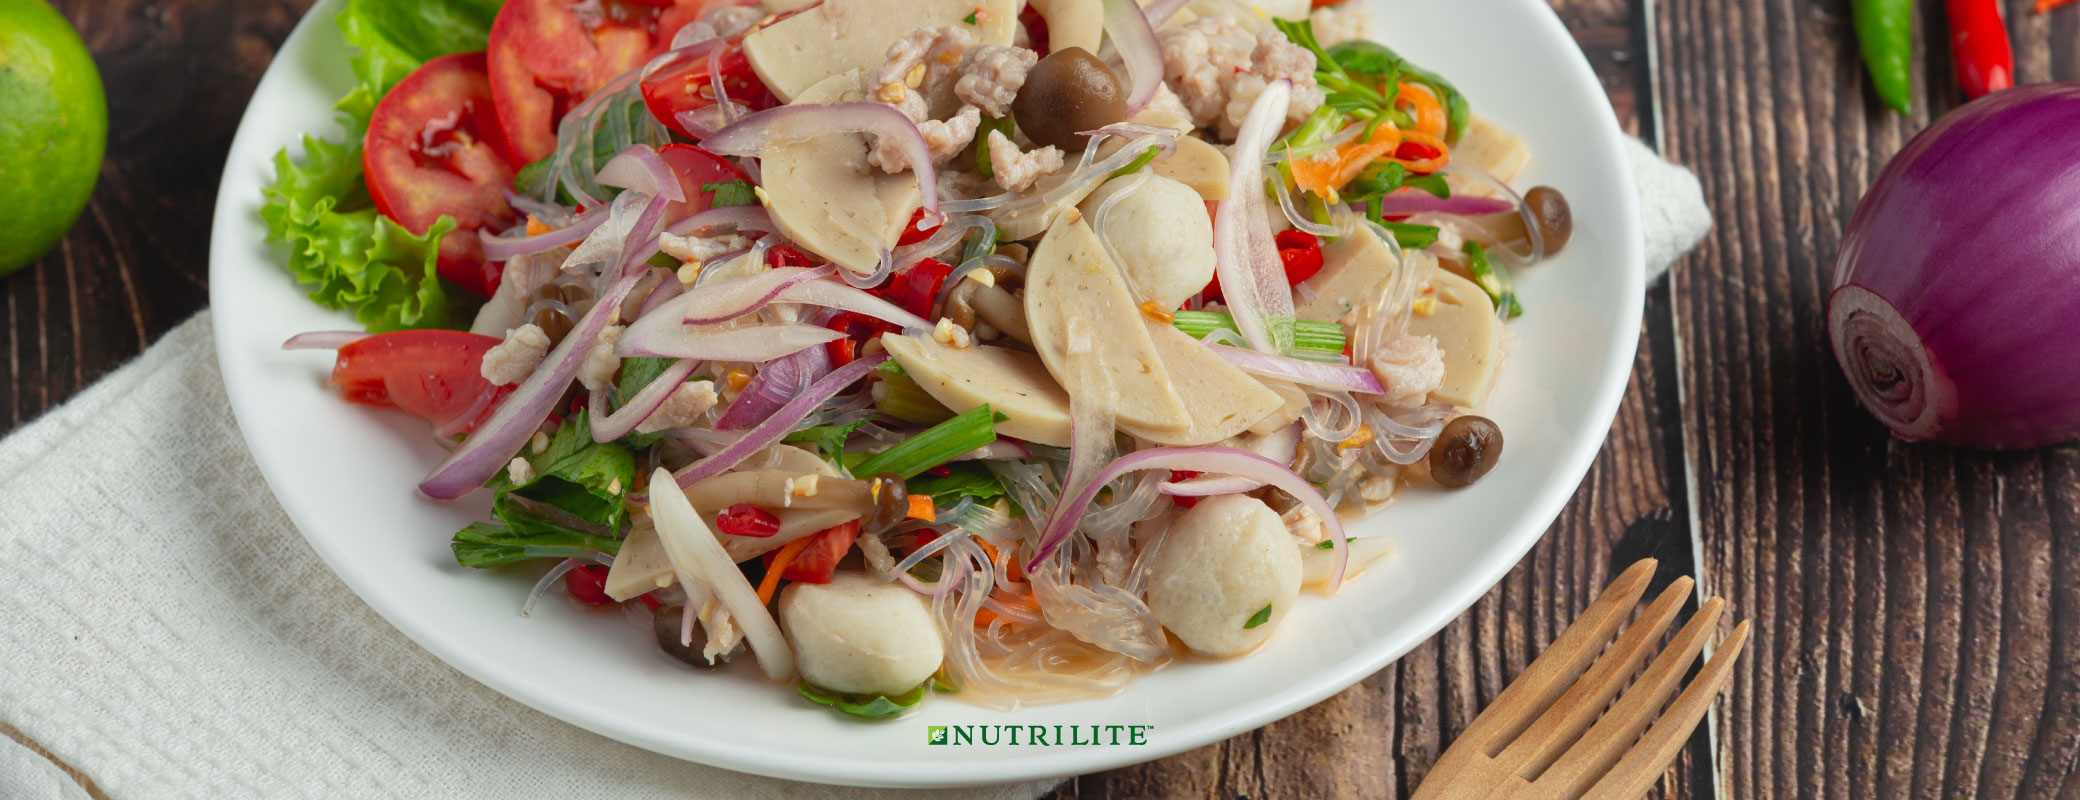 อาหารลดความอ้วน พร้อมทริคเด็ด! กินยังไงให้ผอม | Nutrilite™ Thailand